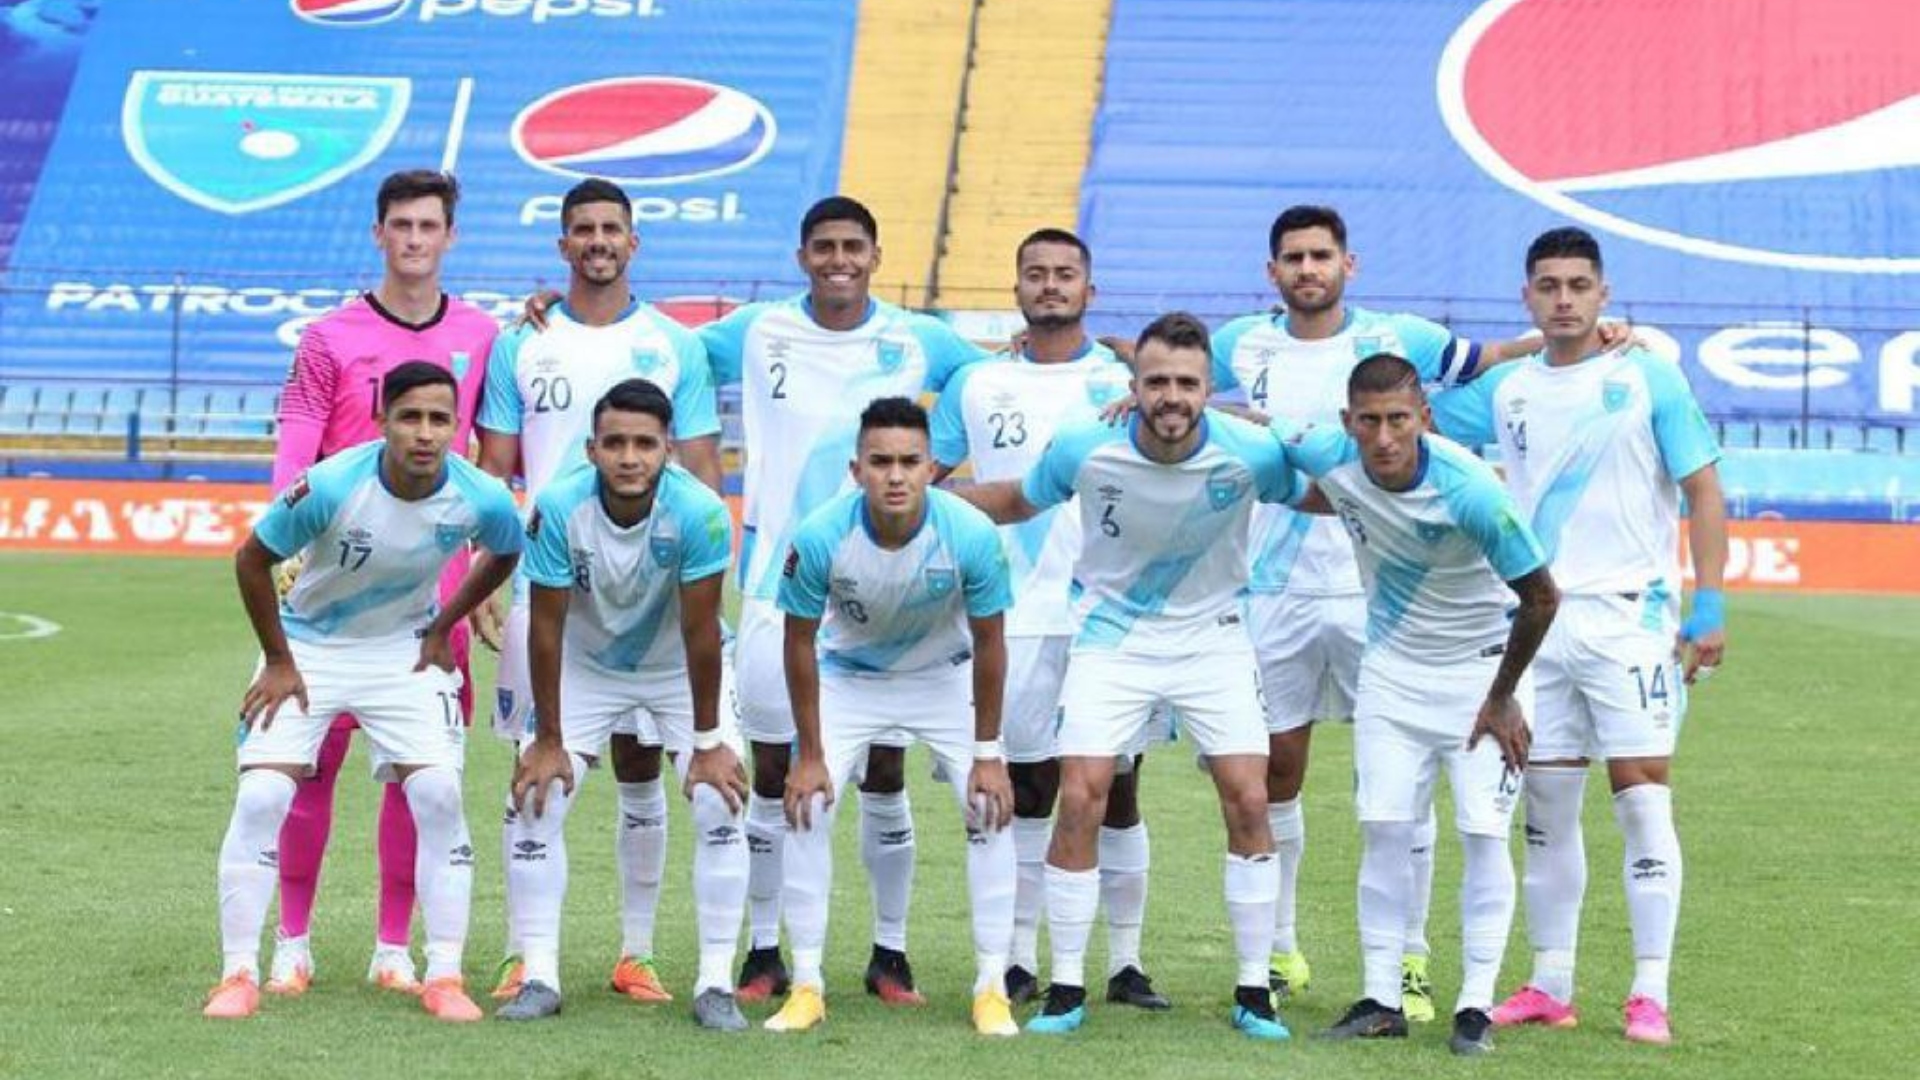 La Selección de Guatemala consigue una marca mundial - Soy Positivo